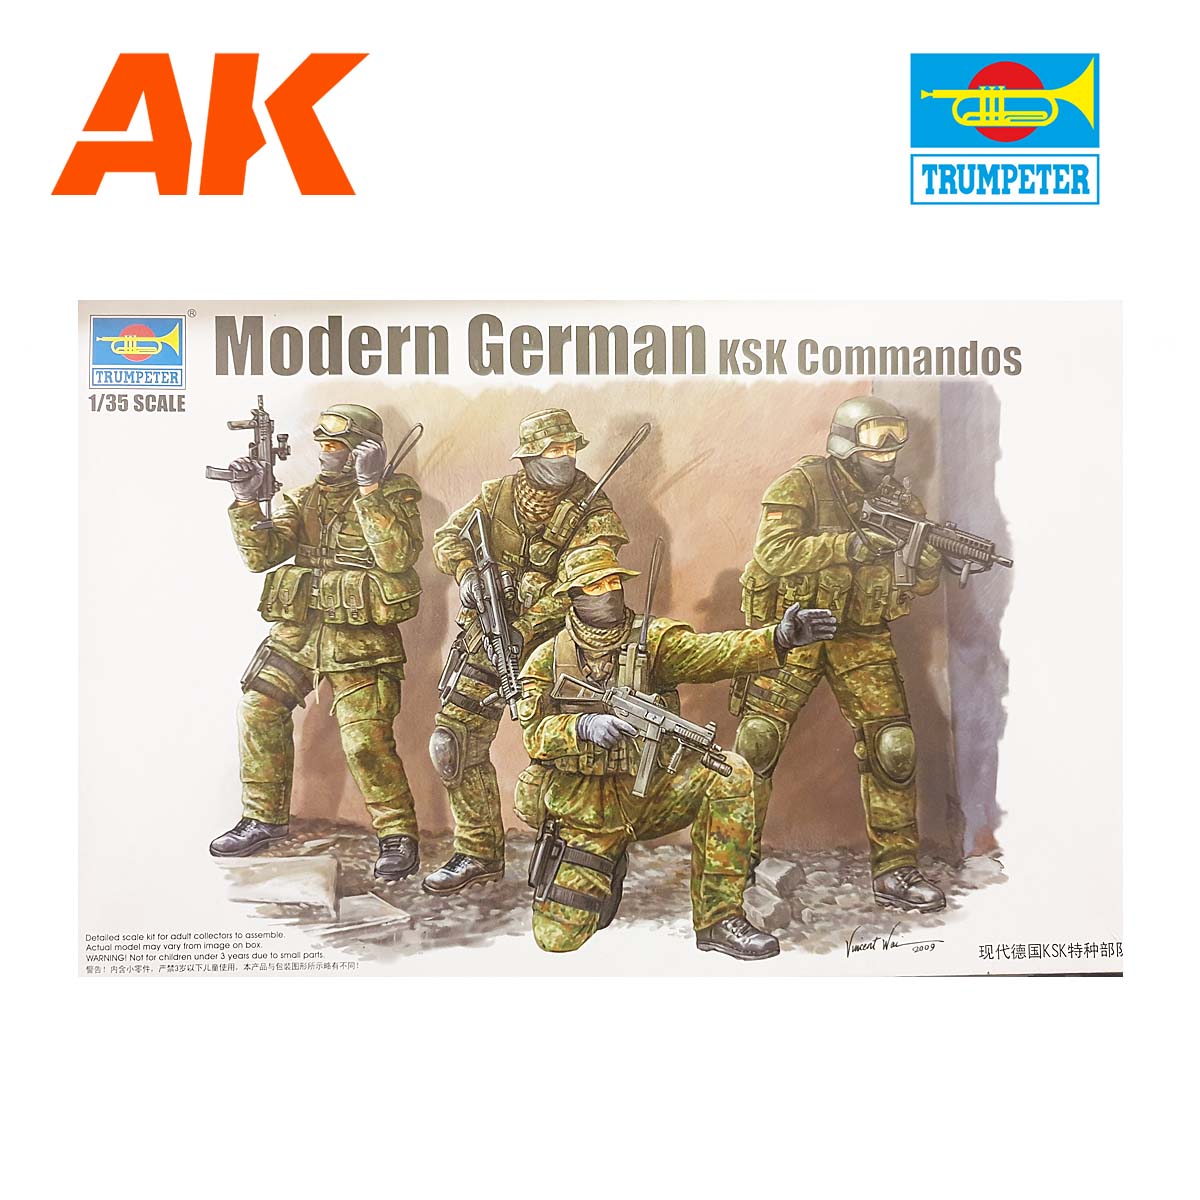 Mod.German KSK Commandos 1/35